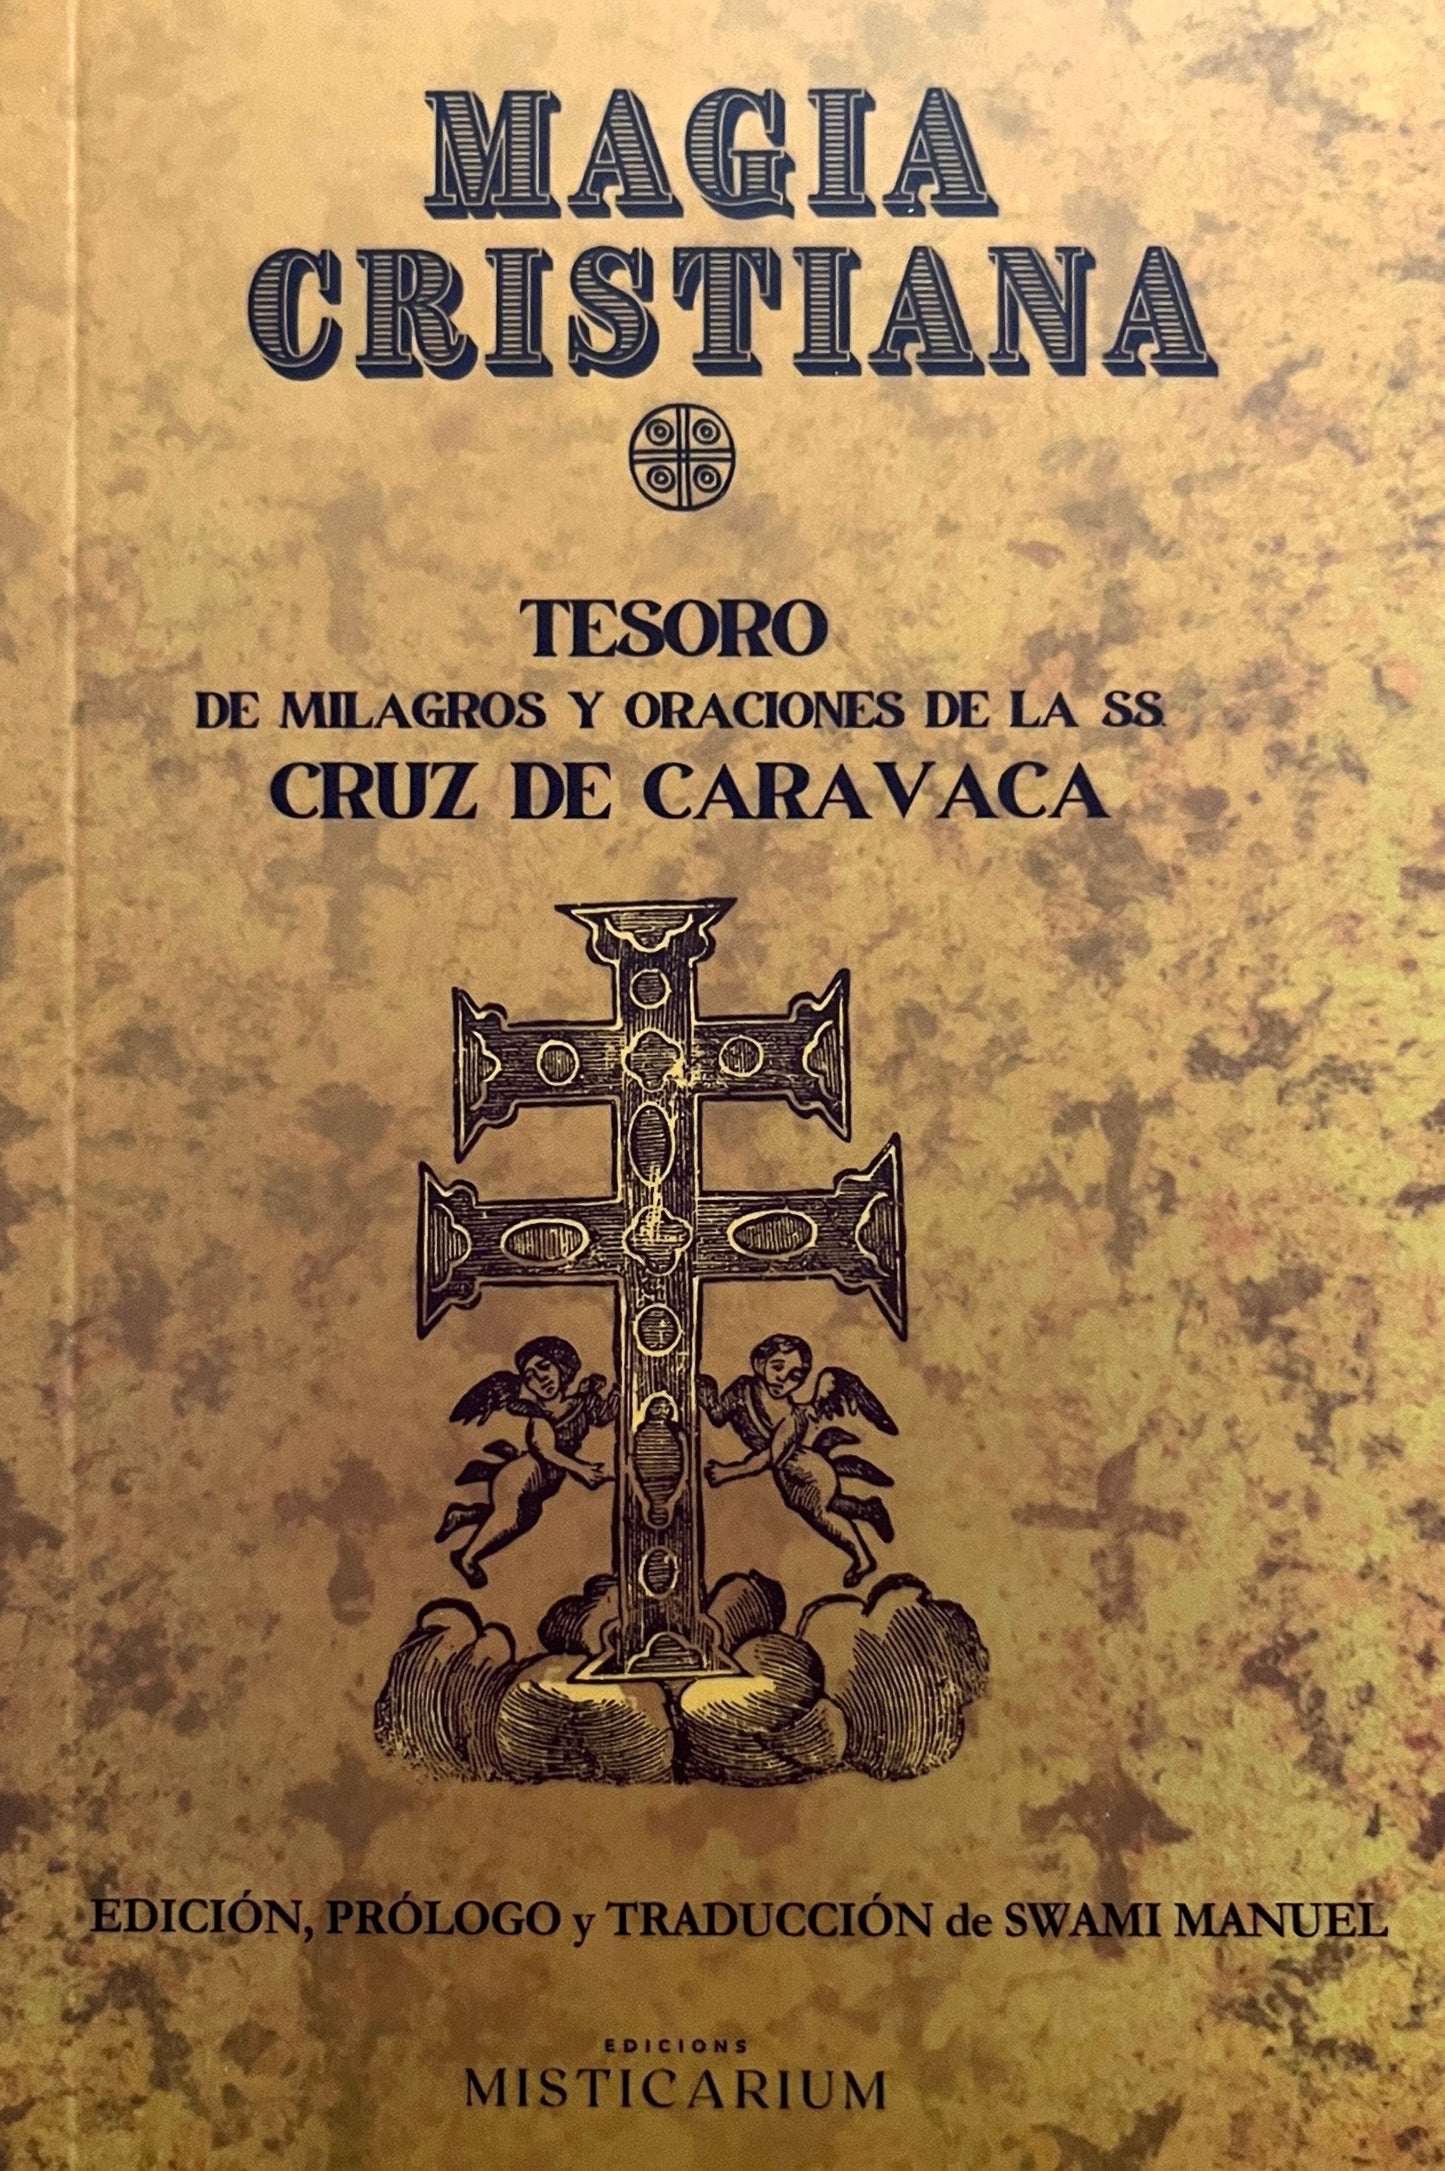 MAGIA CRISTIANA - Tesoro de Milagros y Oraciones de la SS. de CARAVACA - ANÓNIMOS